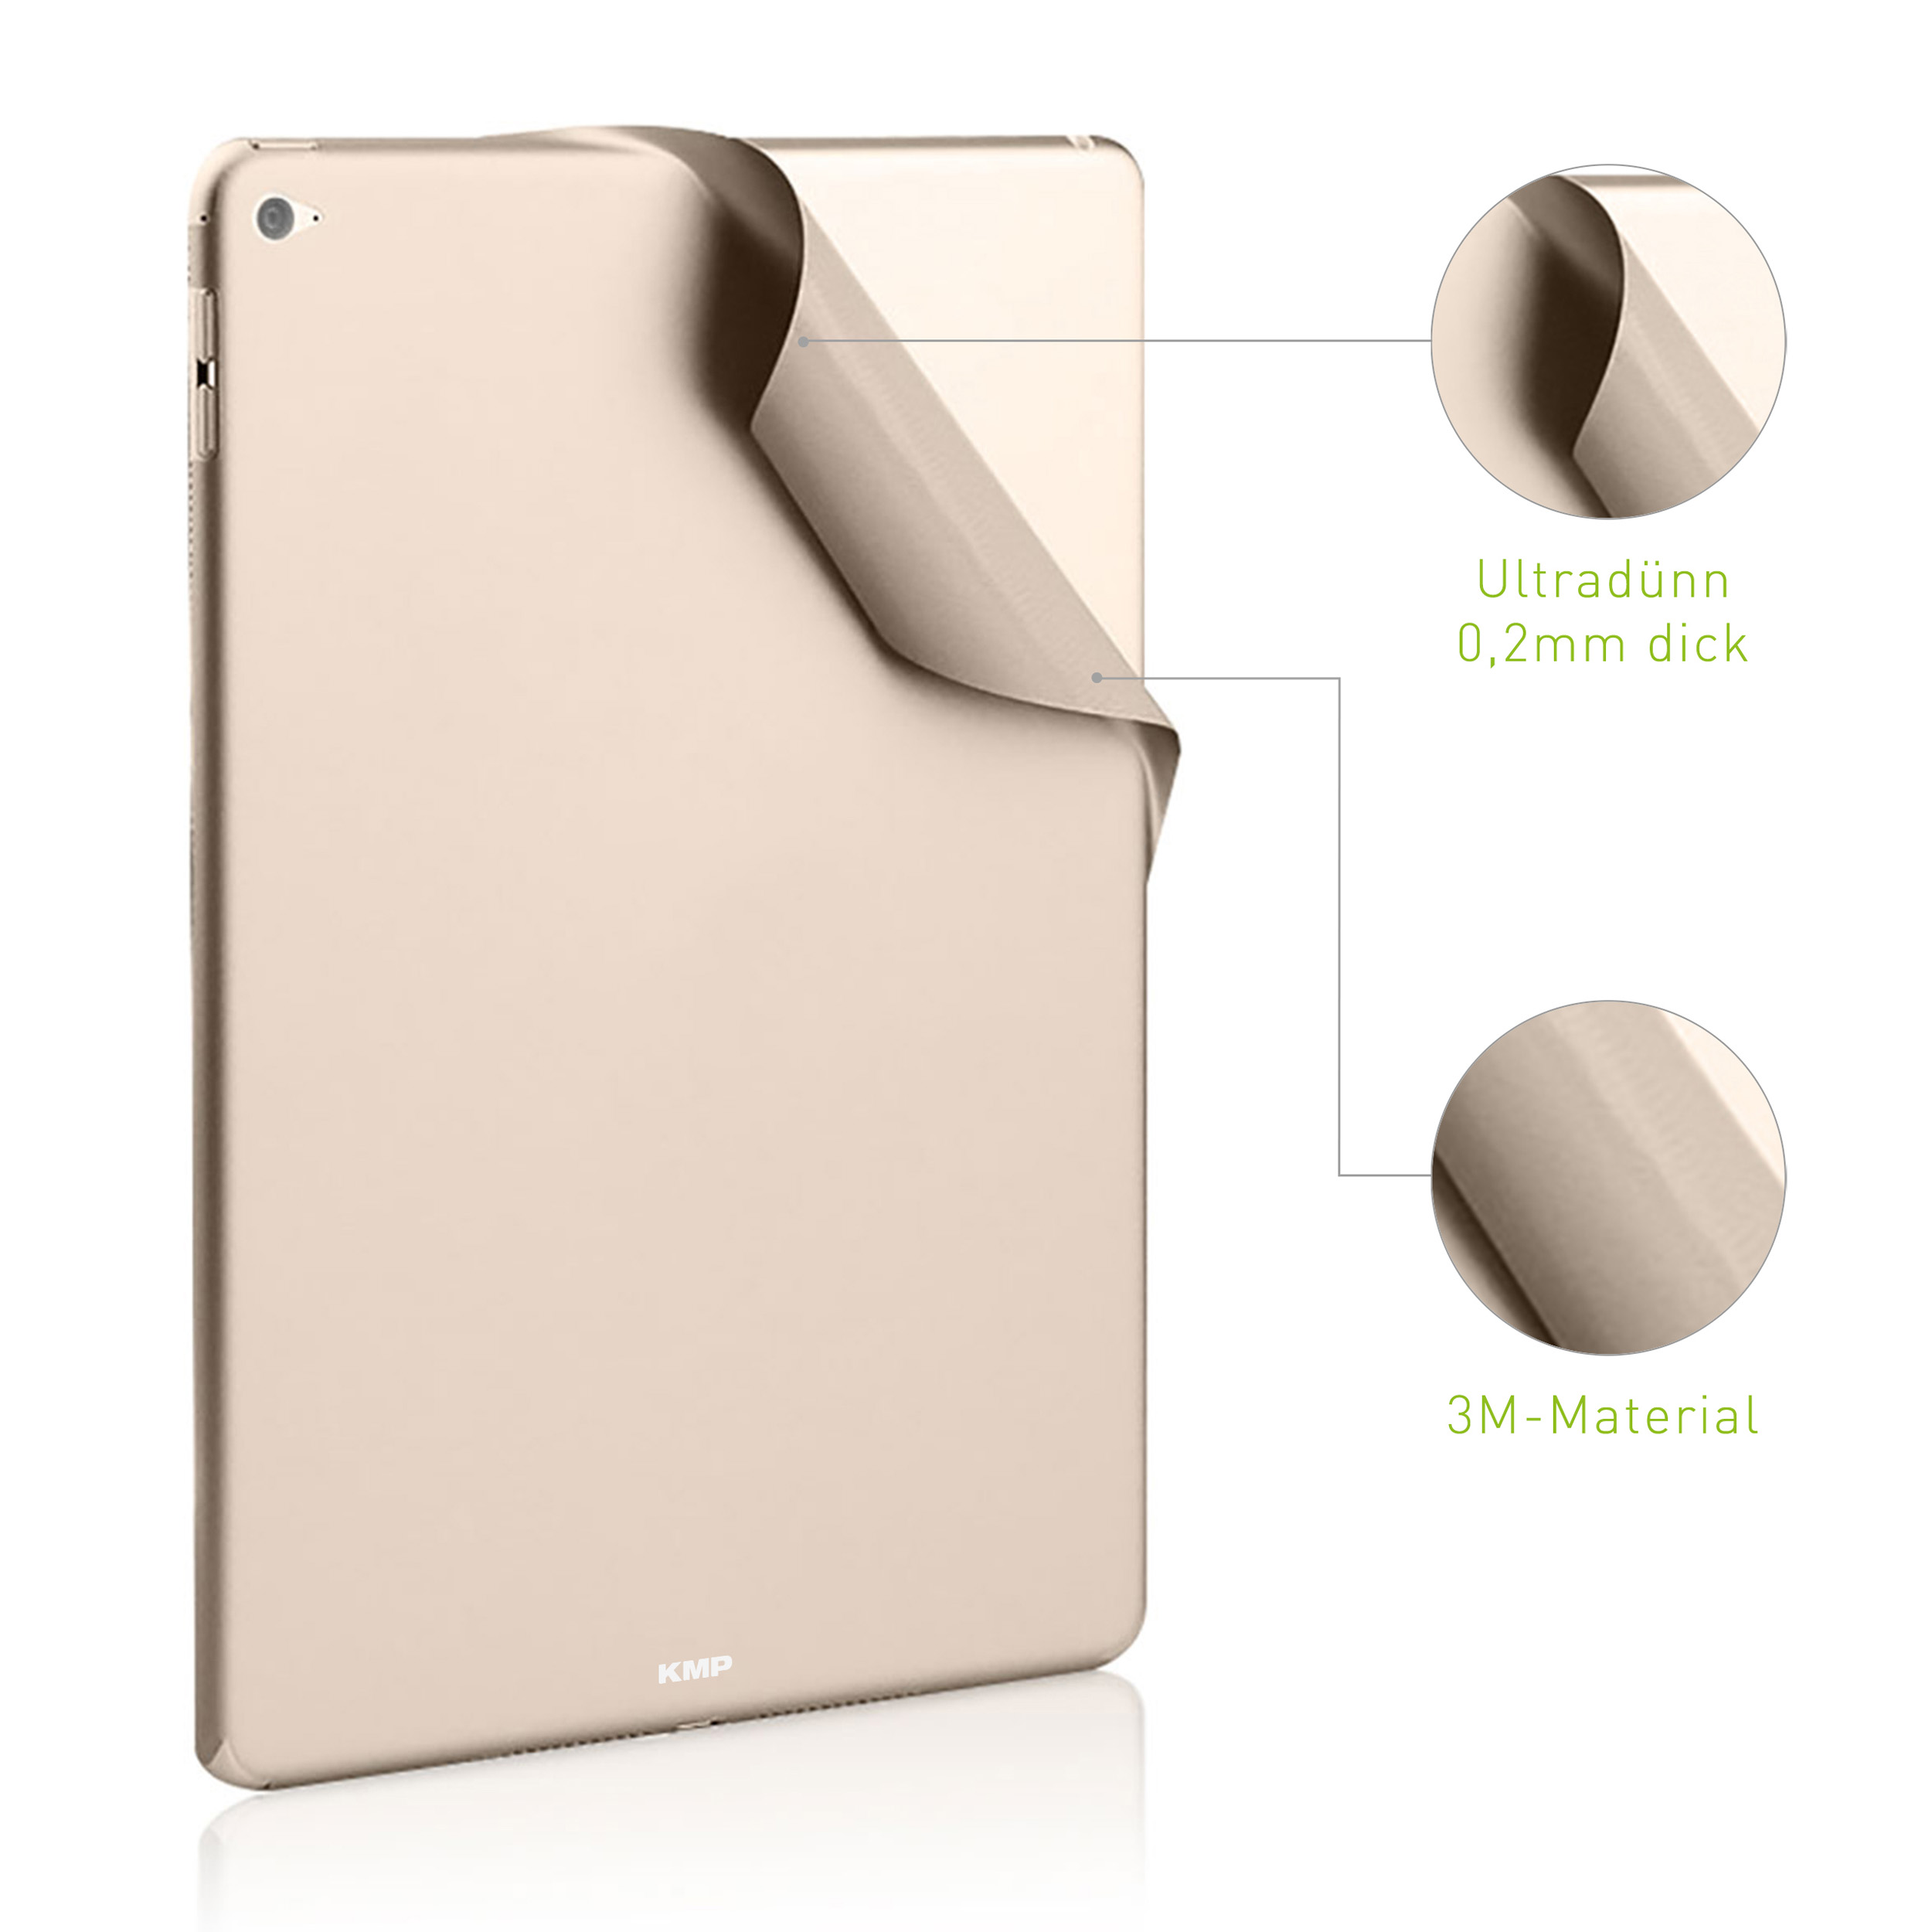 Mini Gold Flip Protective Rückseite 3M-Material, für iPad Apple skin Vinylfilm, Schutzfolie KMP 6H gold Cover AntiScratchLevel, für 4